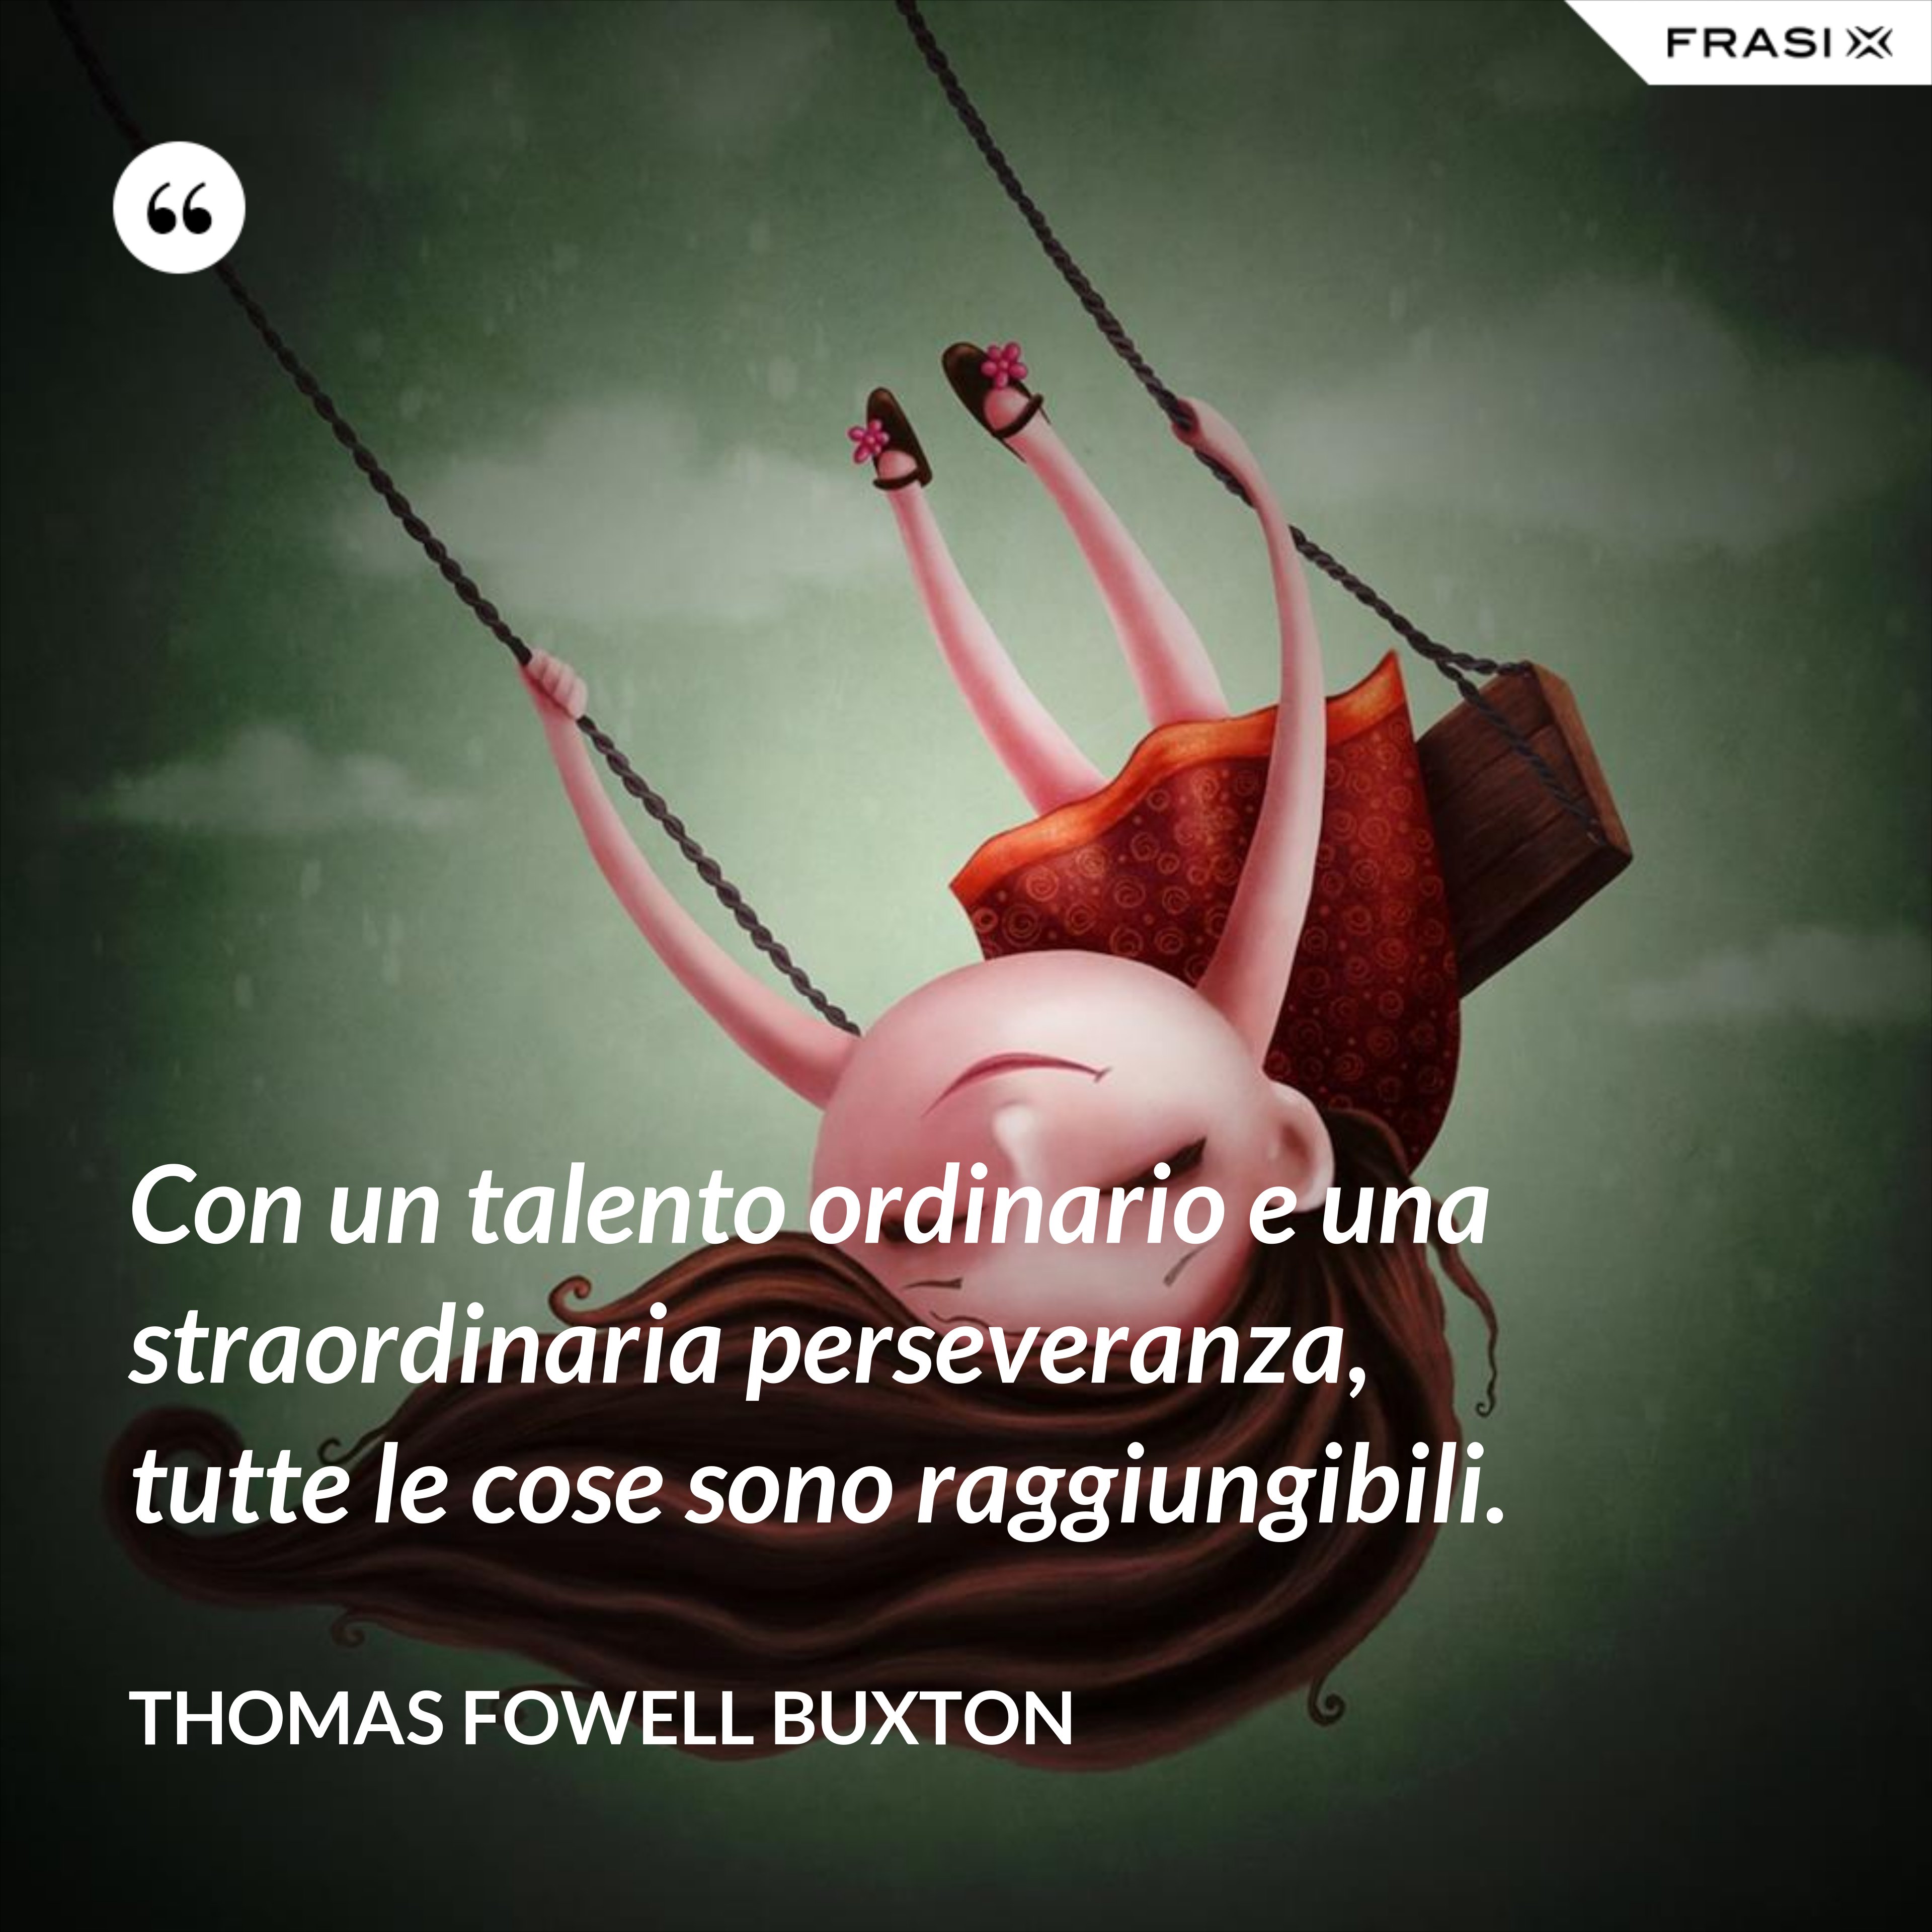 Con un talento ordinario e una straordinaria perseveranza, tutte le cose sono raggiungibili. - Thomas Fowell Buxton